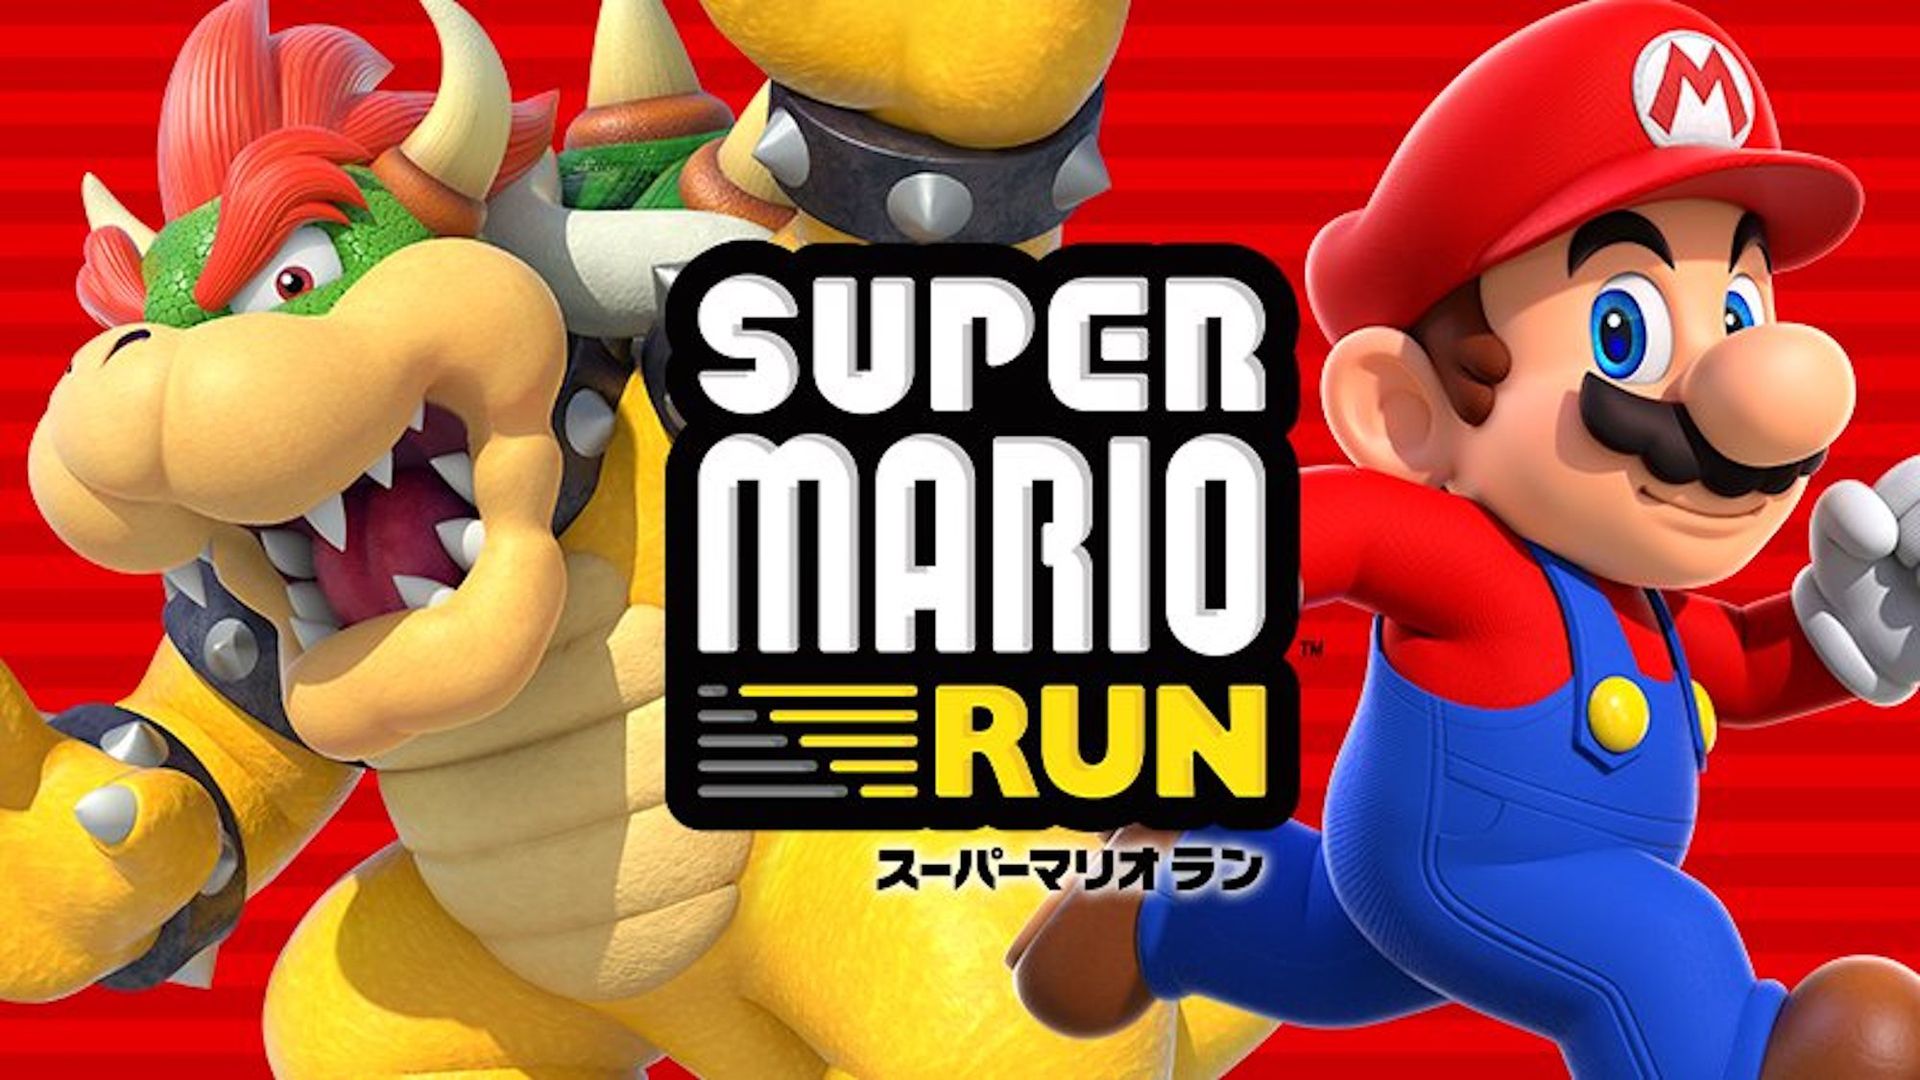 Super Mario Run na Androida w marcu